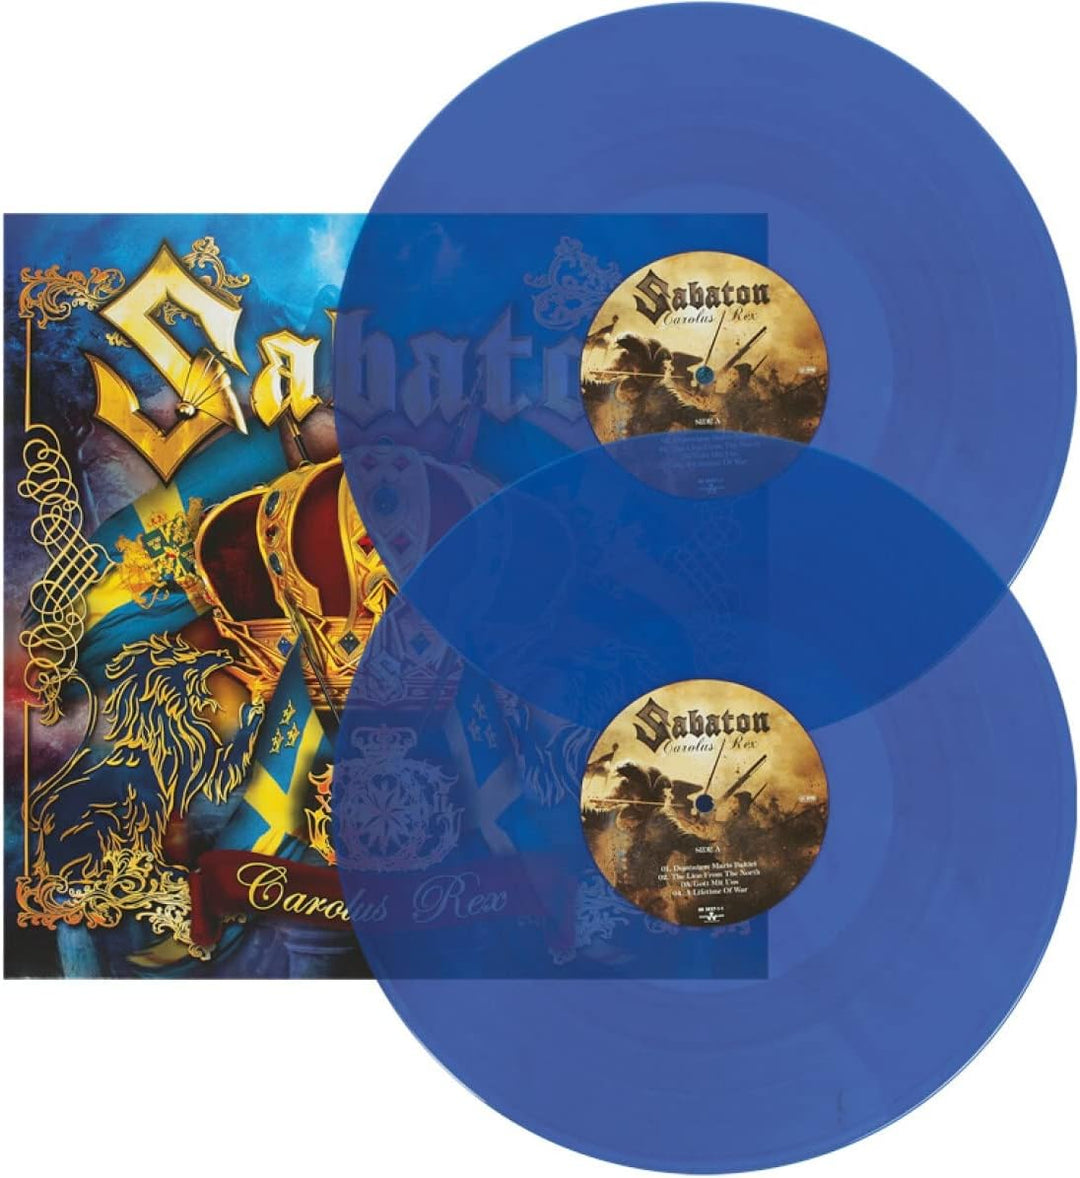 Sabaton - Carolus Rex (Blue Vinyl) [VINYL]